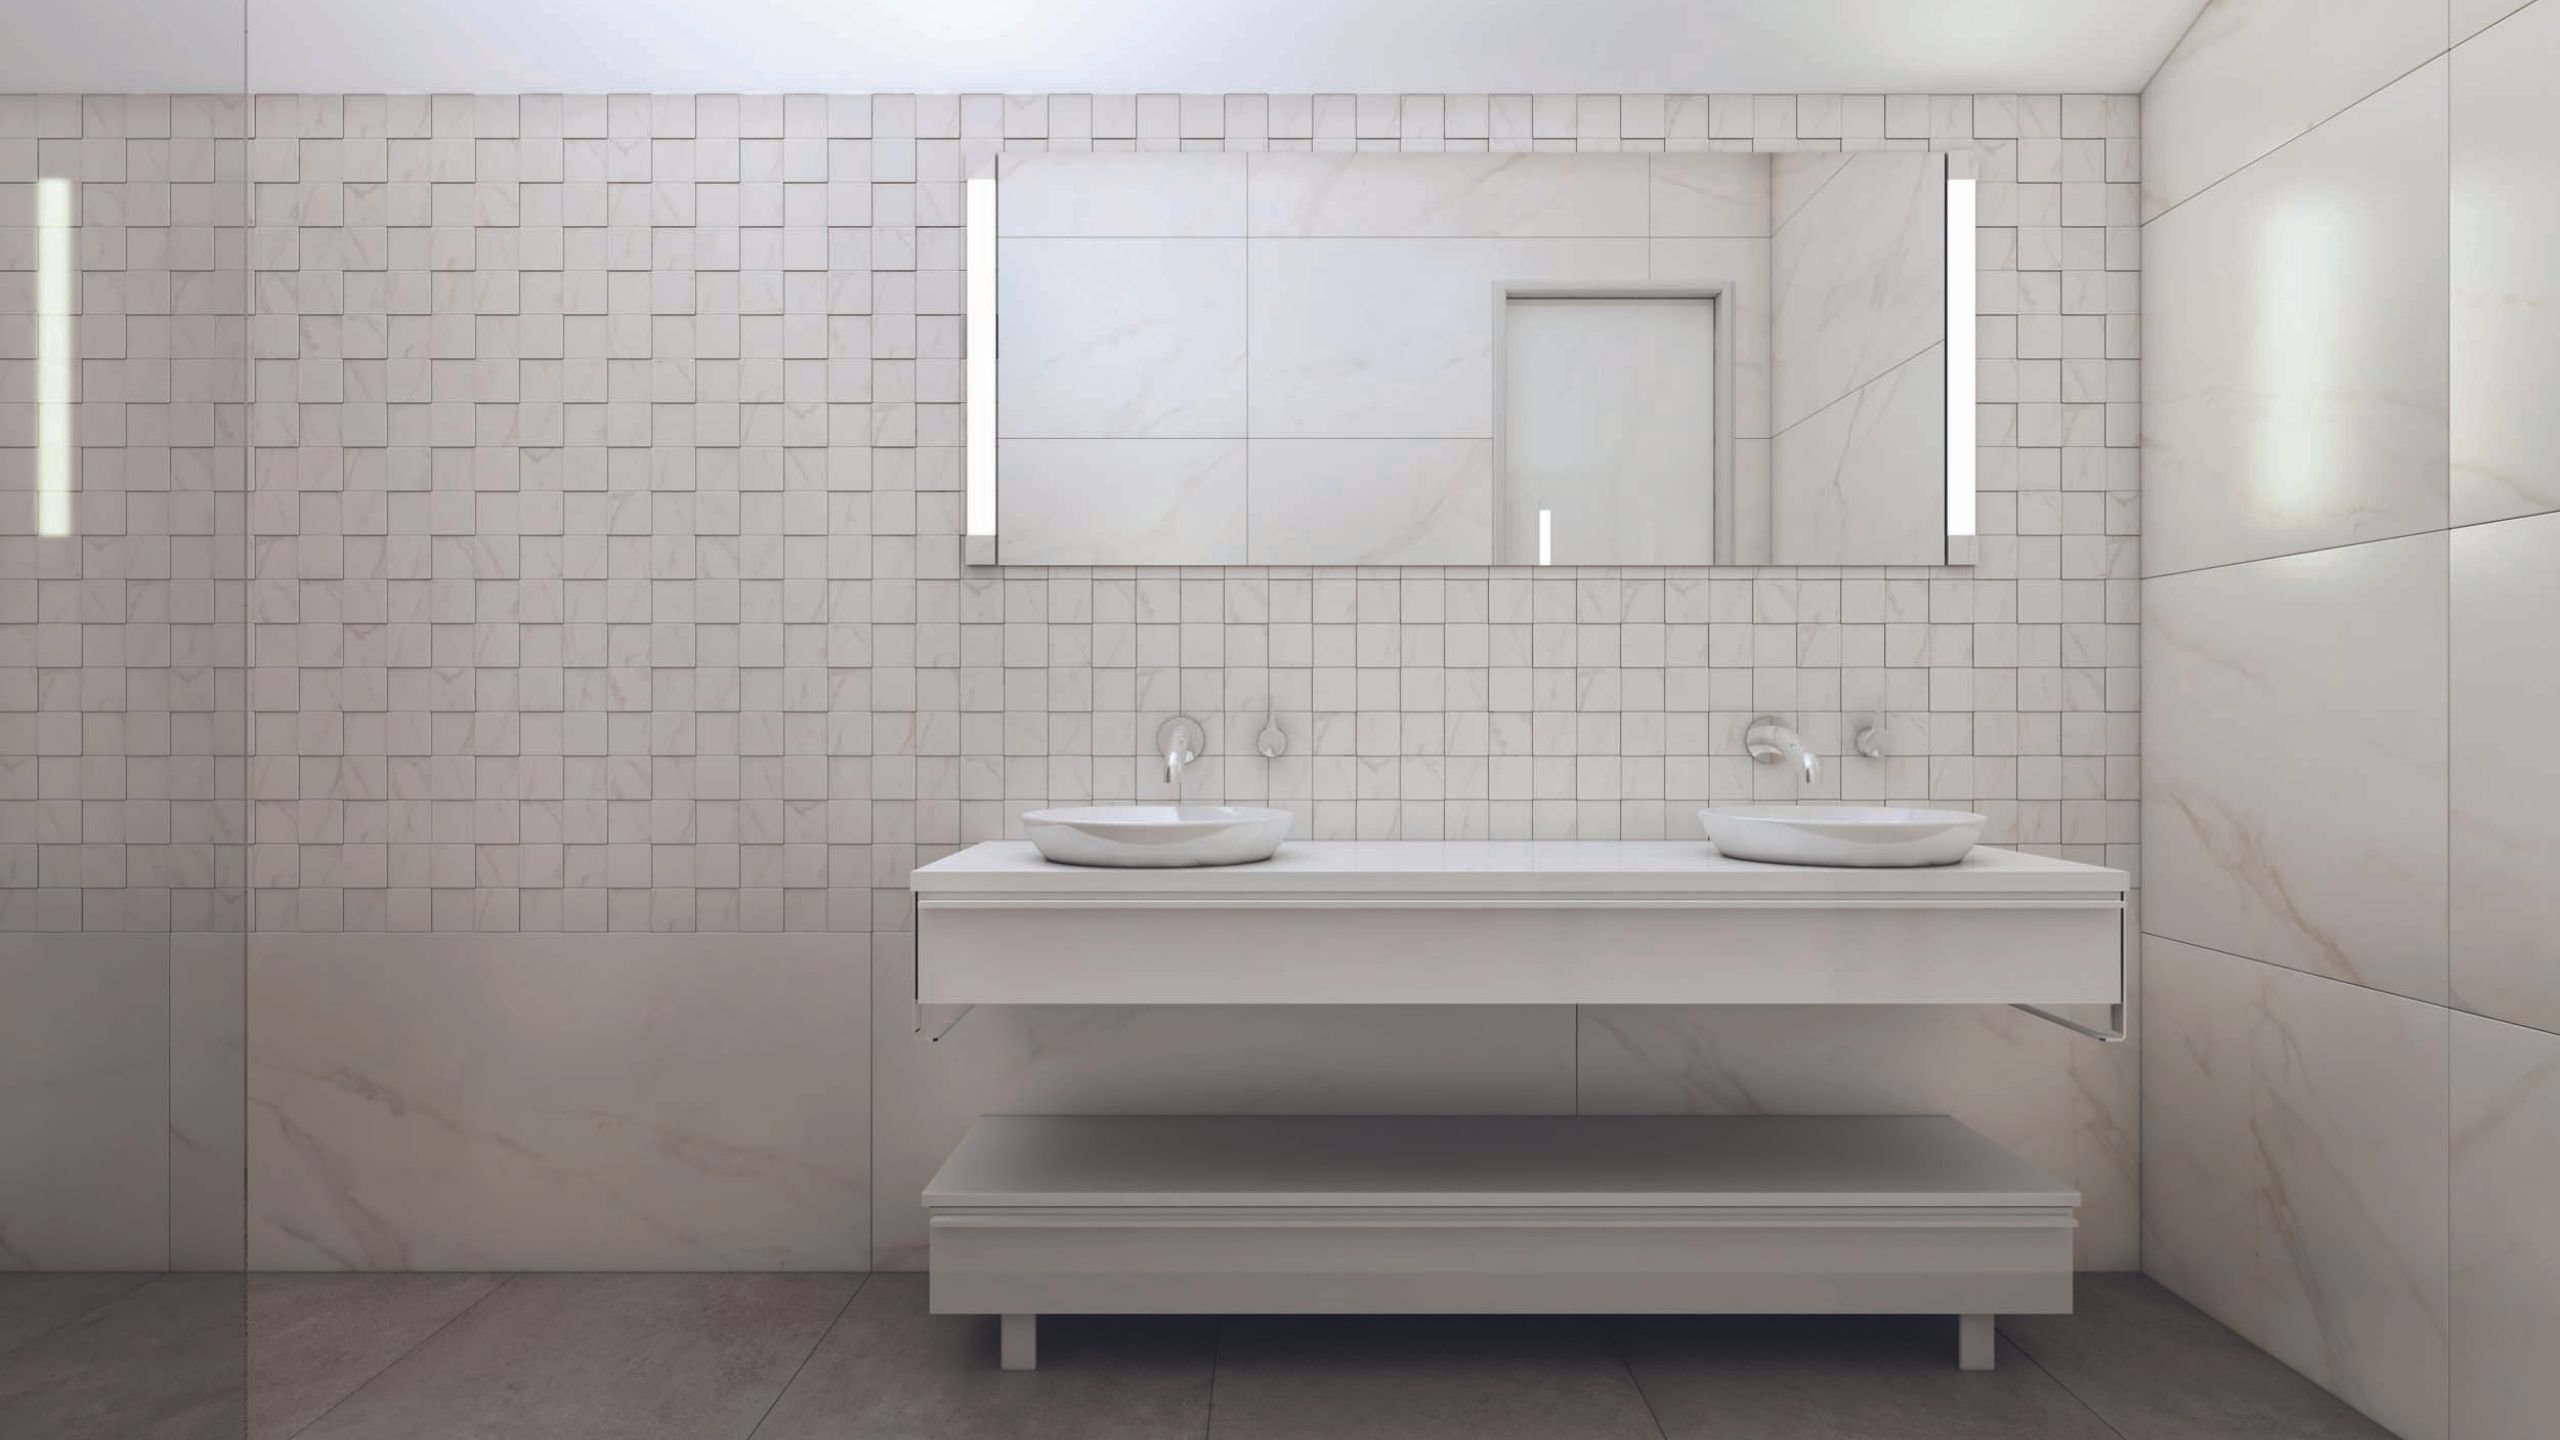 Как оформить дизайн ванной комнаты в 2021 году: подборка фото